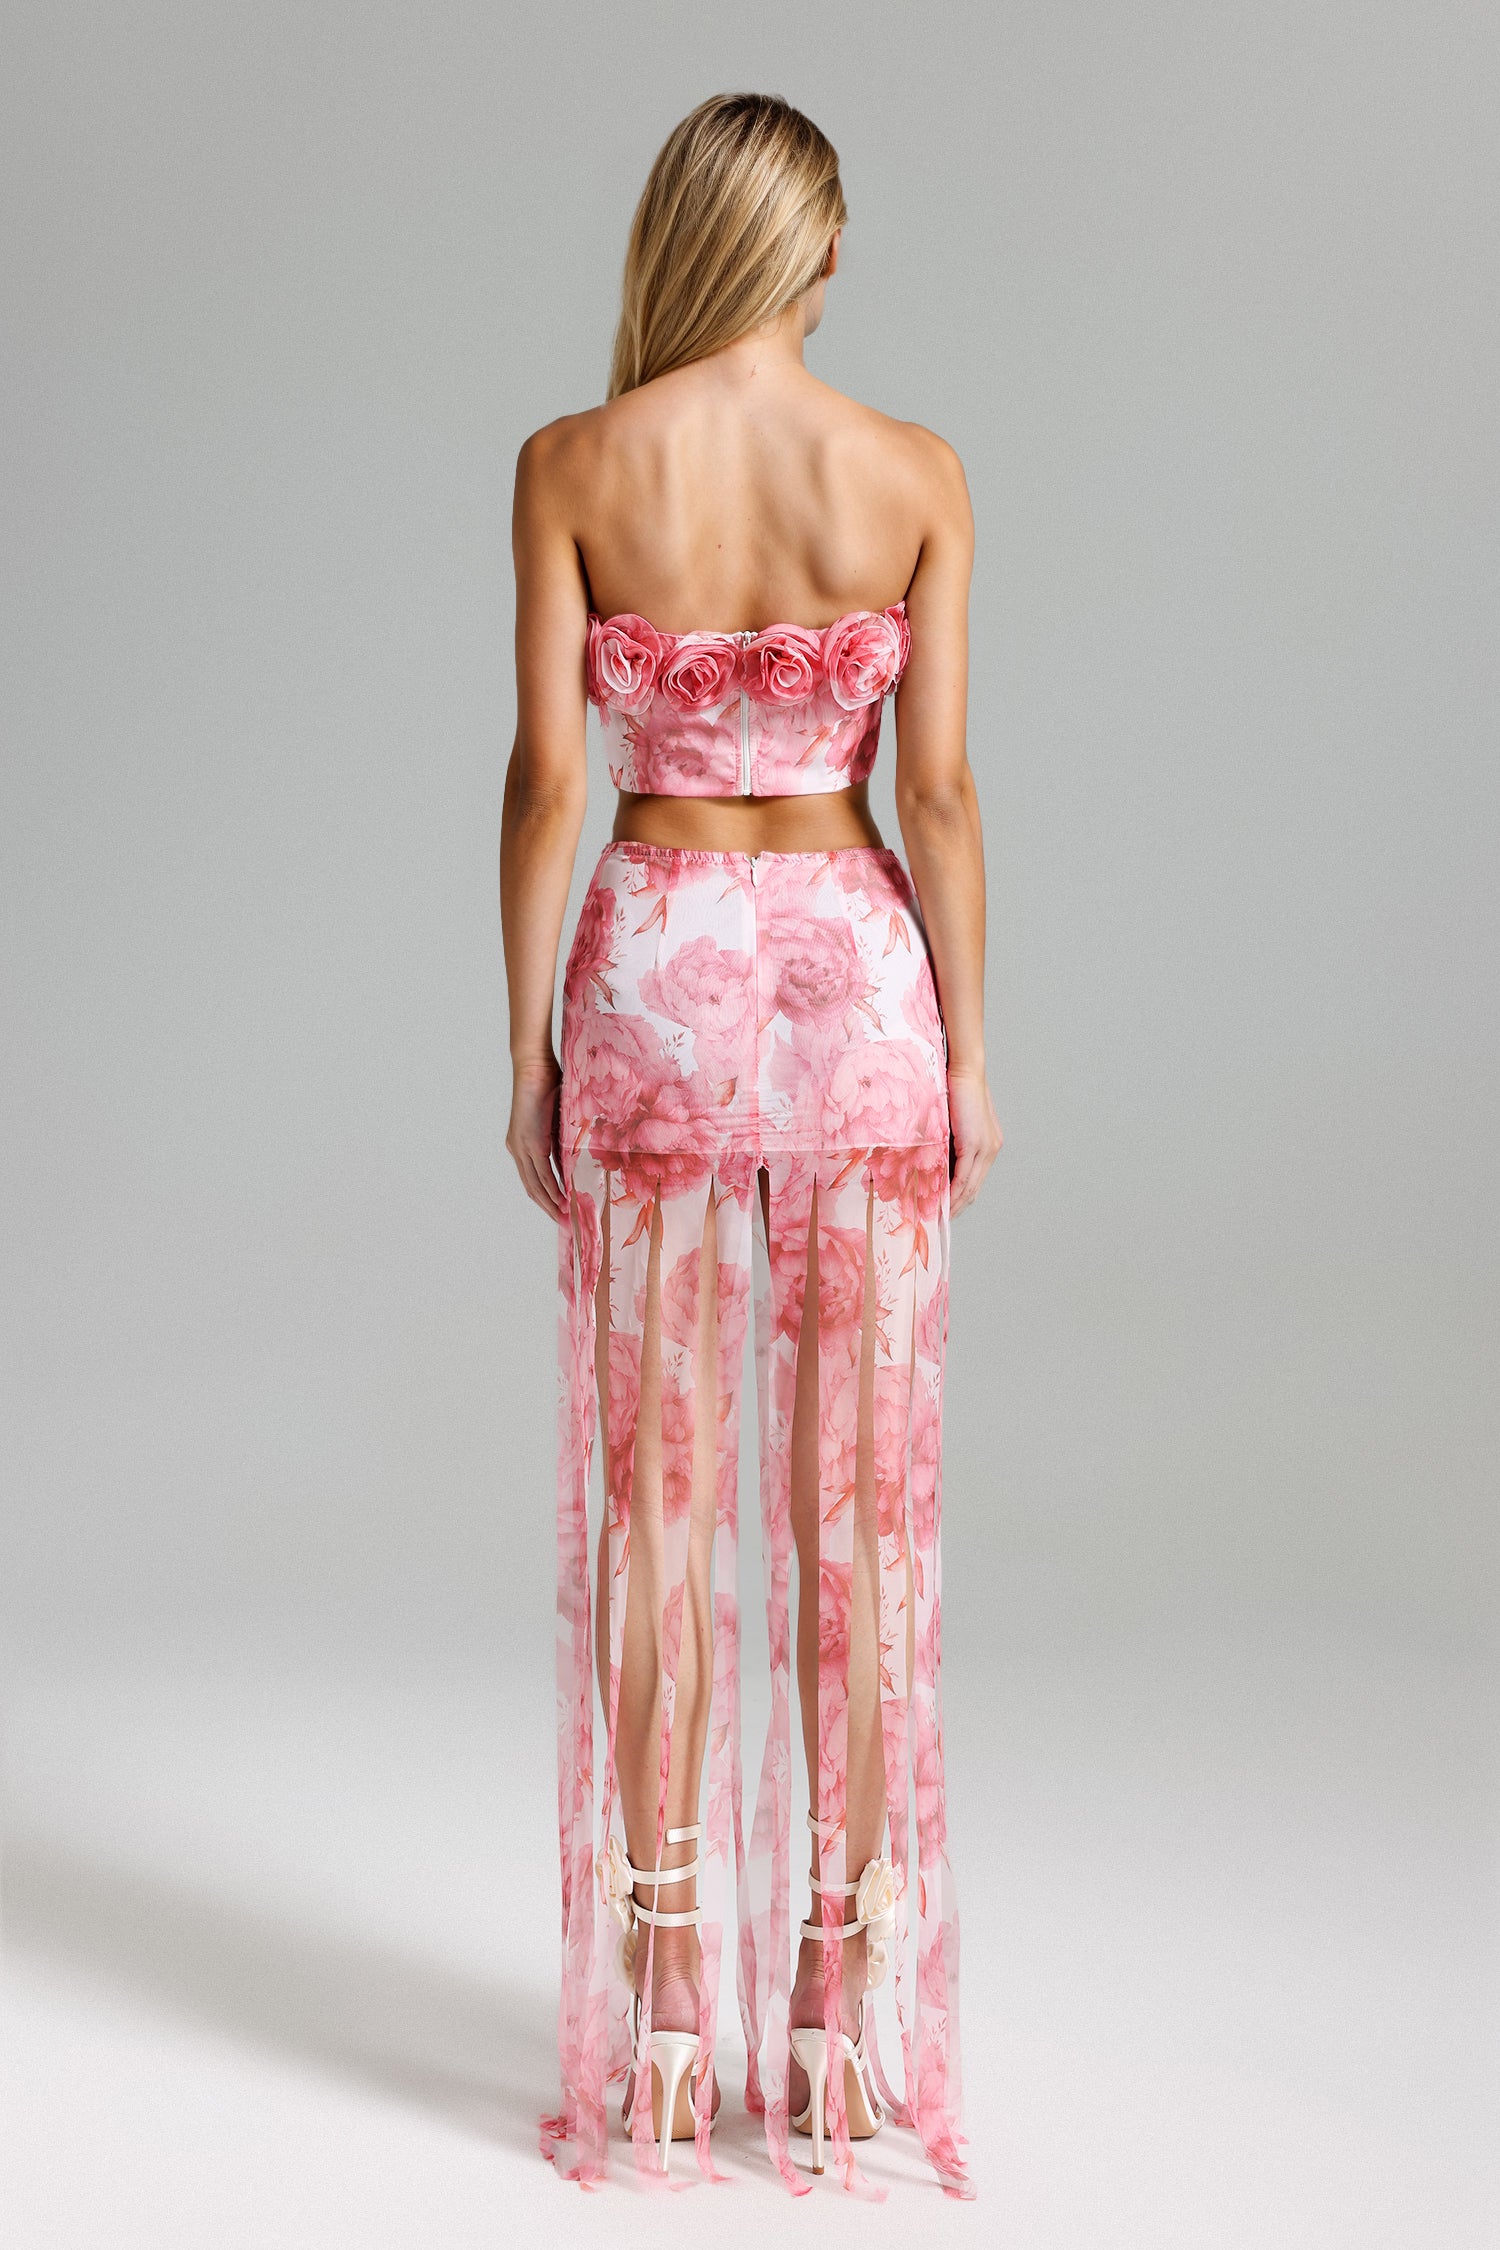 Sparkly Floral Print Top Fringe Skirt Set